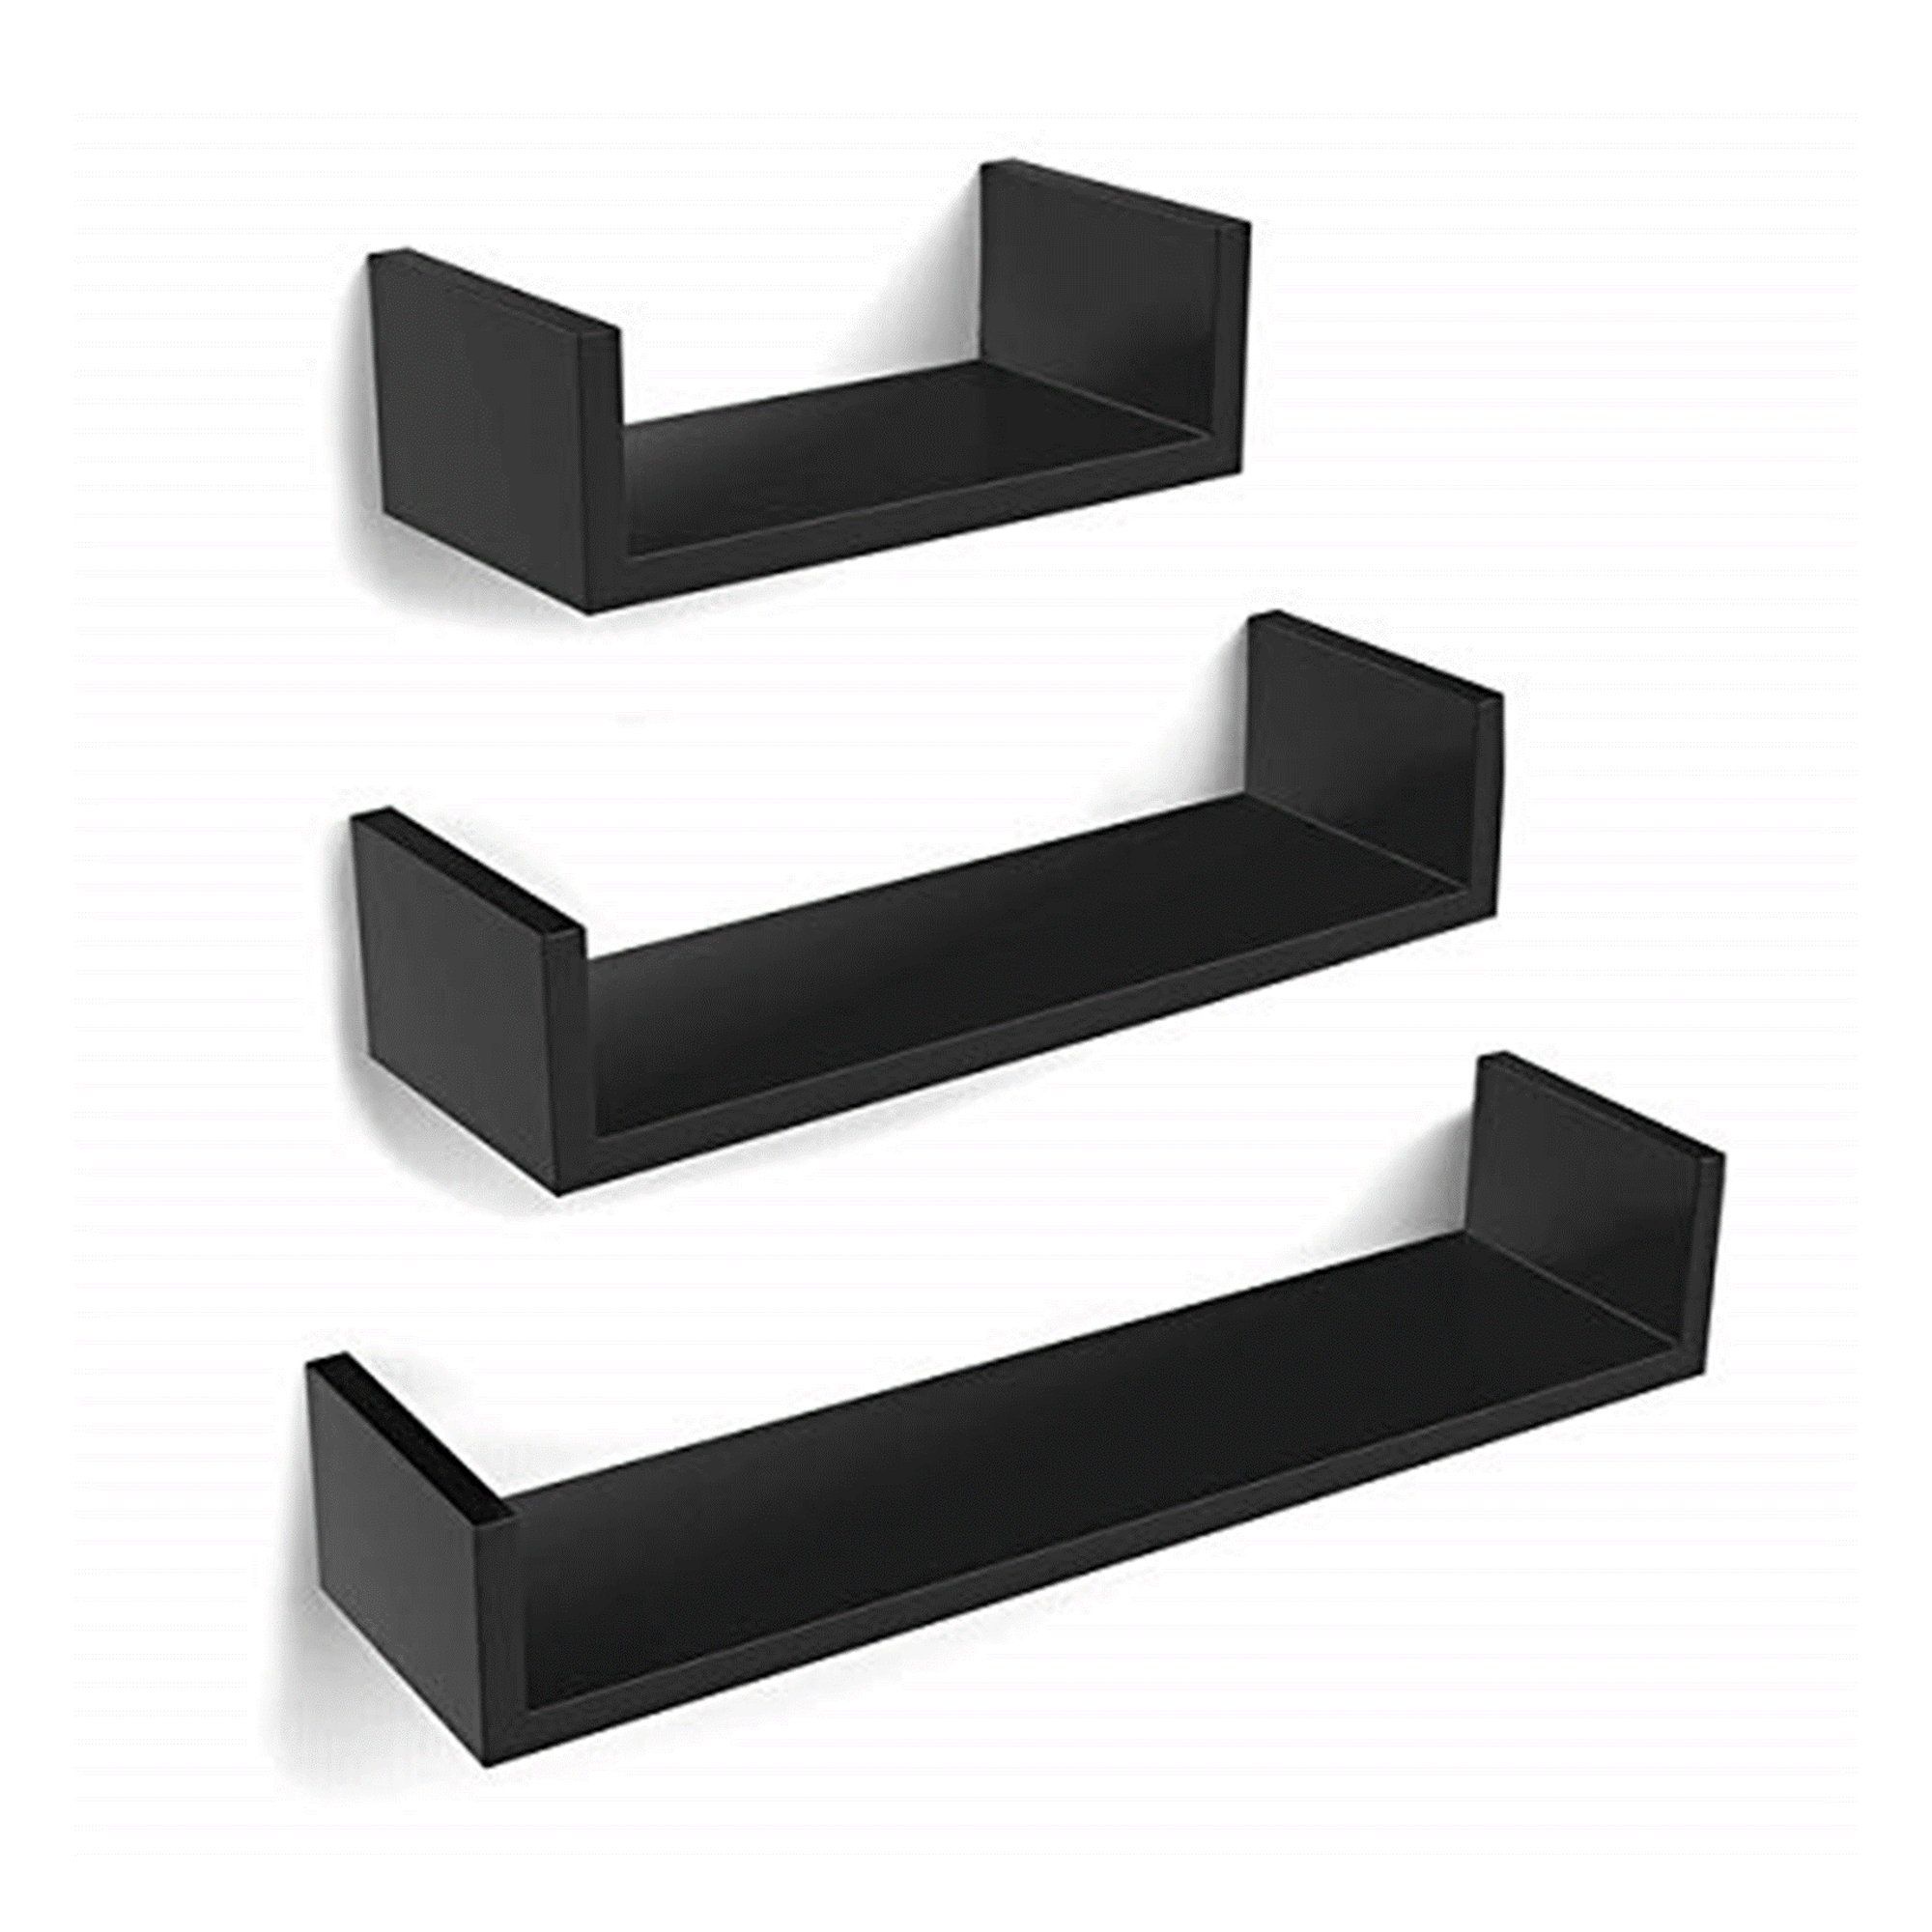 Set of 3 Black U-Shaped Floating Wooden MDF Wall Shelves DIY Home Storage